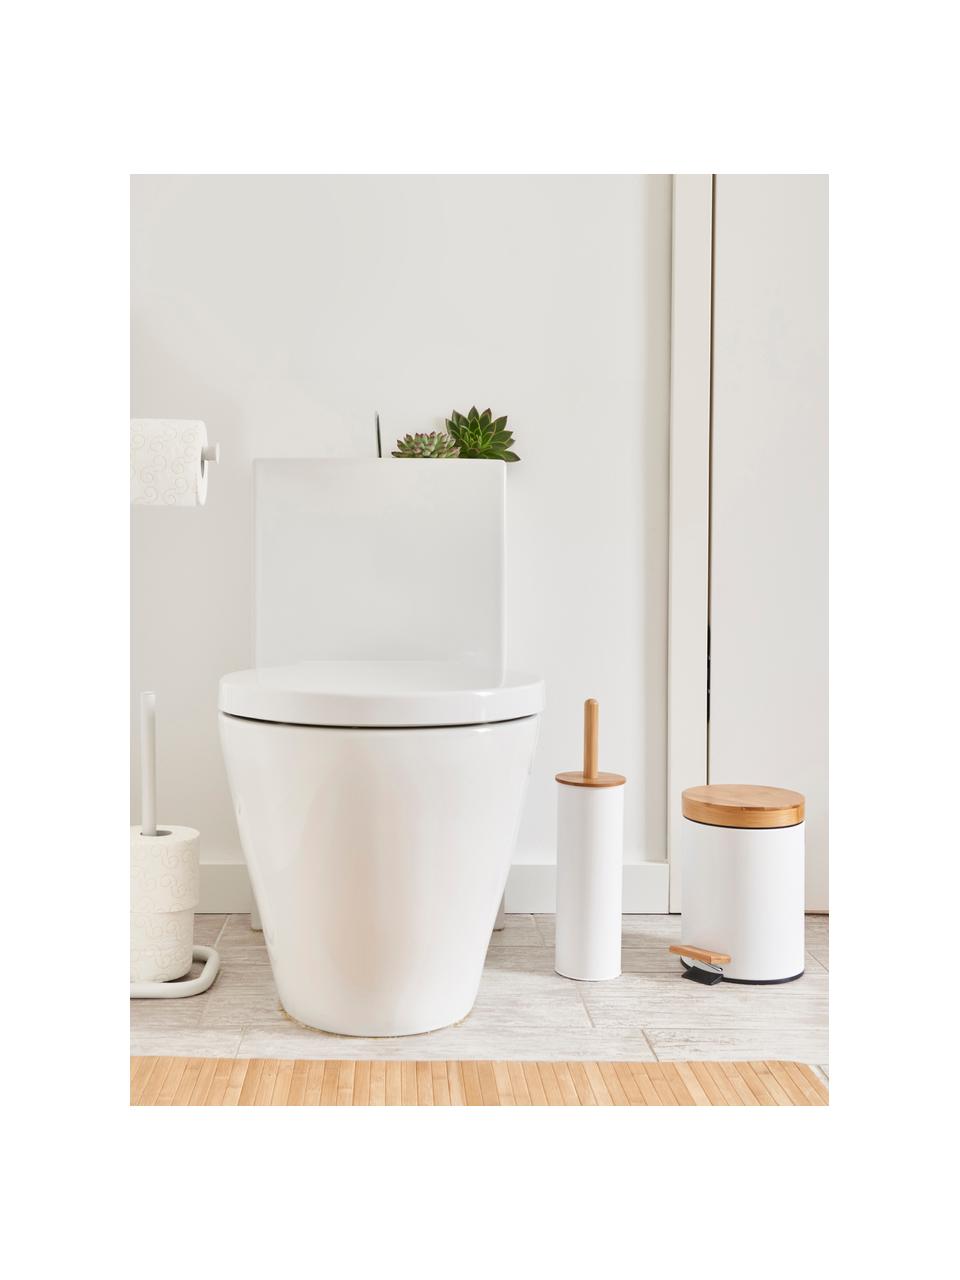 Toilettenbürste Tallin, Behälter: Metall, beschichtet, Deckel: Bambus, Weiss, Helles Holz, Ø 10 x H 38 cm